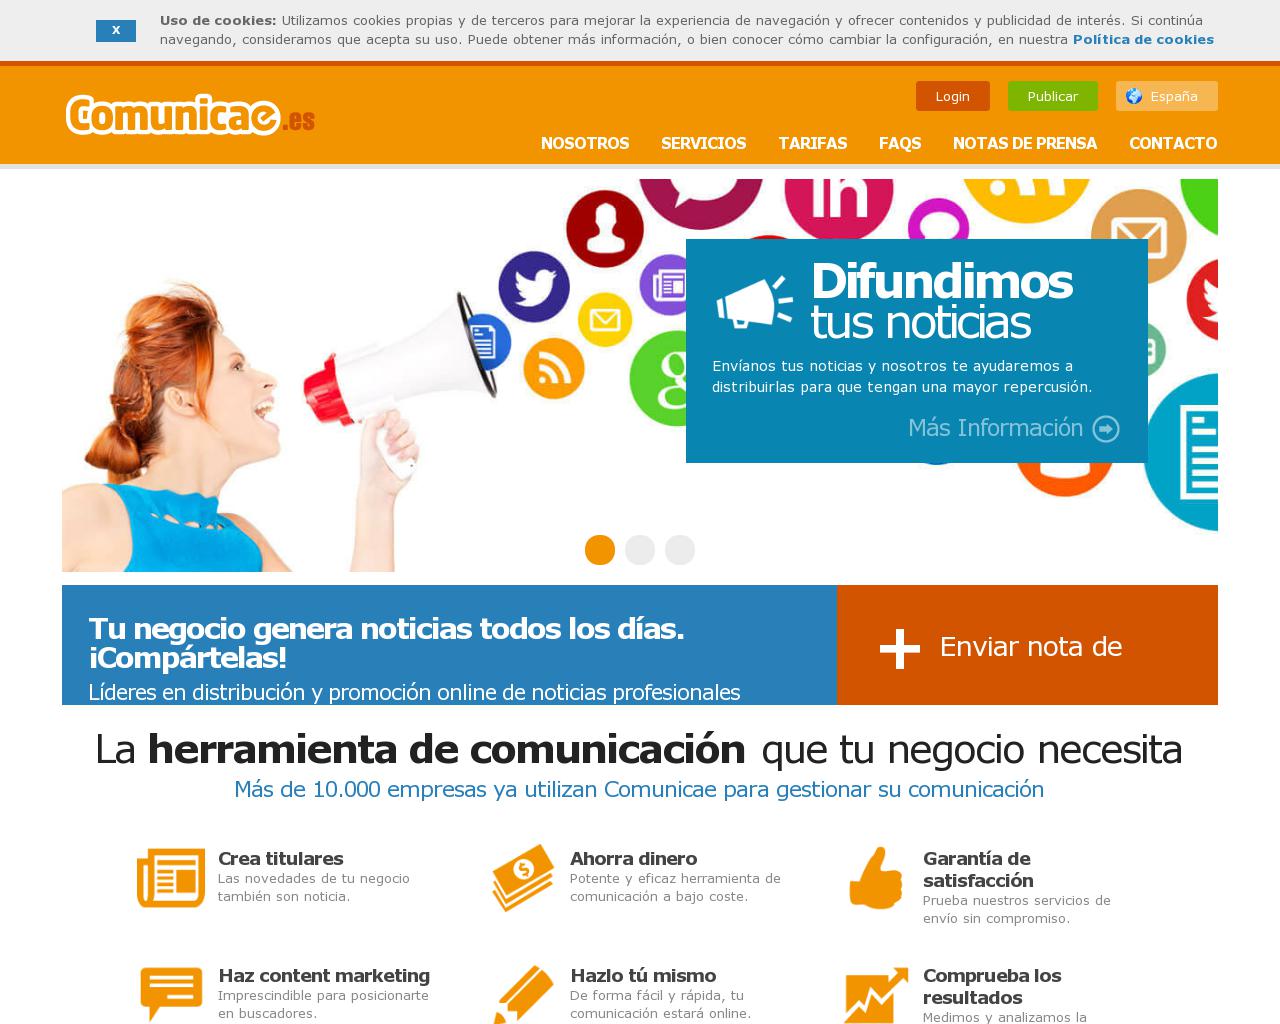 comunicae.es